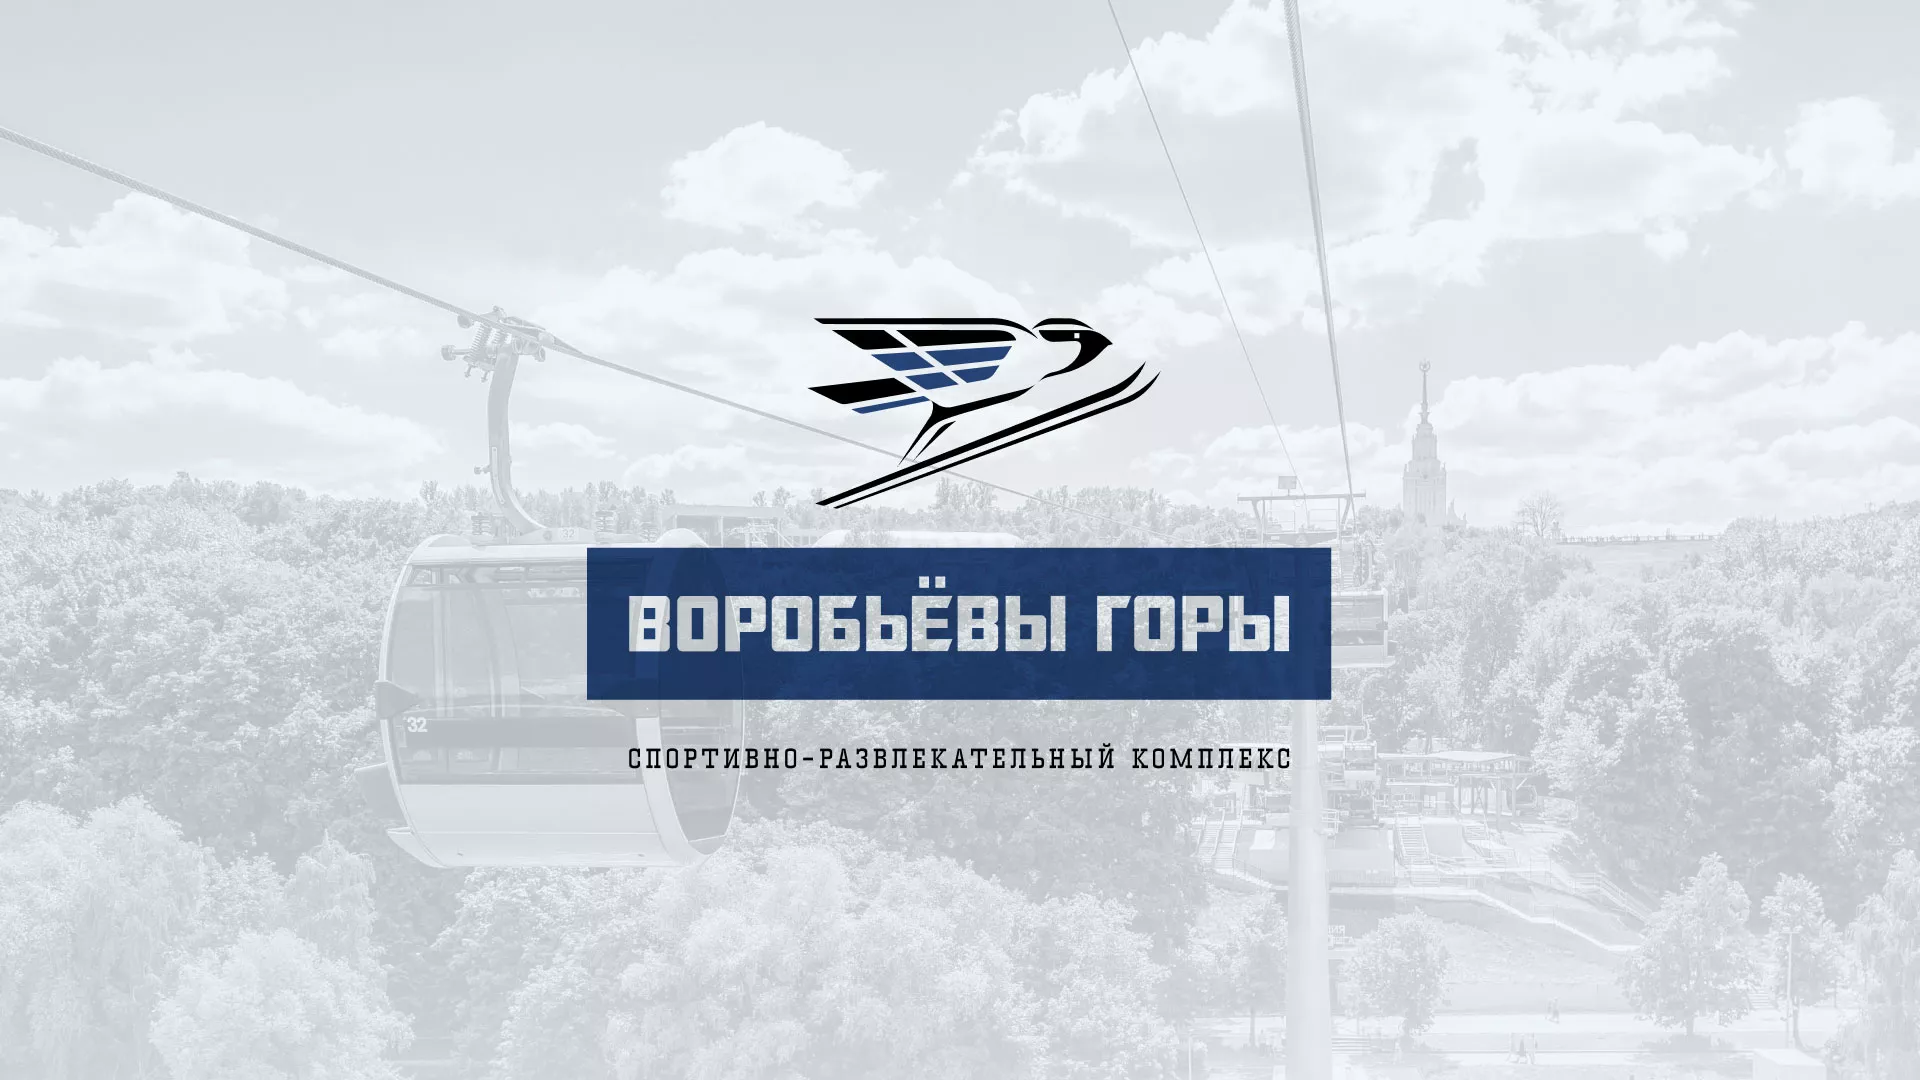 Разработка сайта в Георгиевске для спортивно-развлекательного комплекса «Воробьёвы горы»